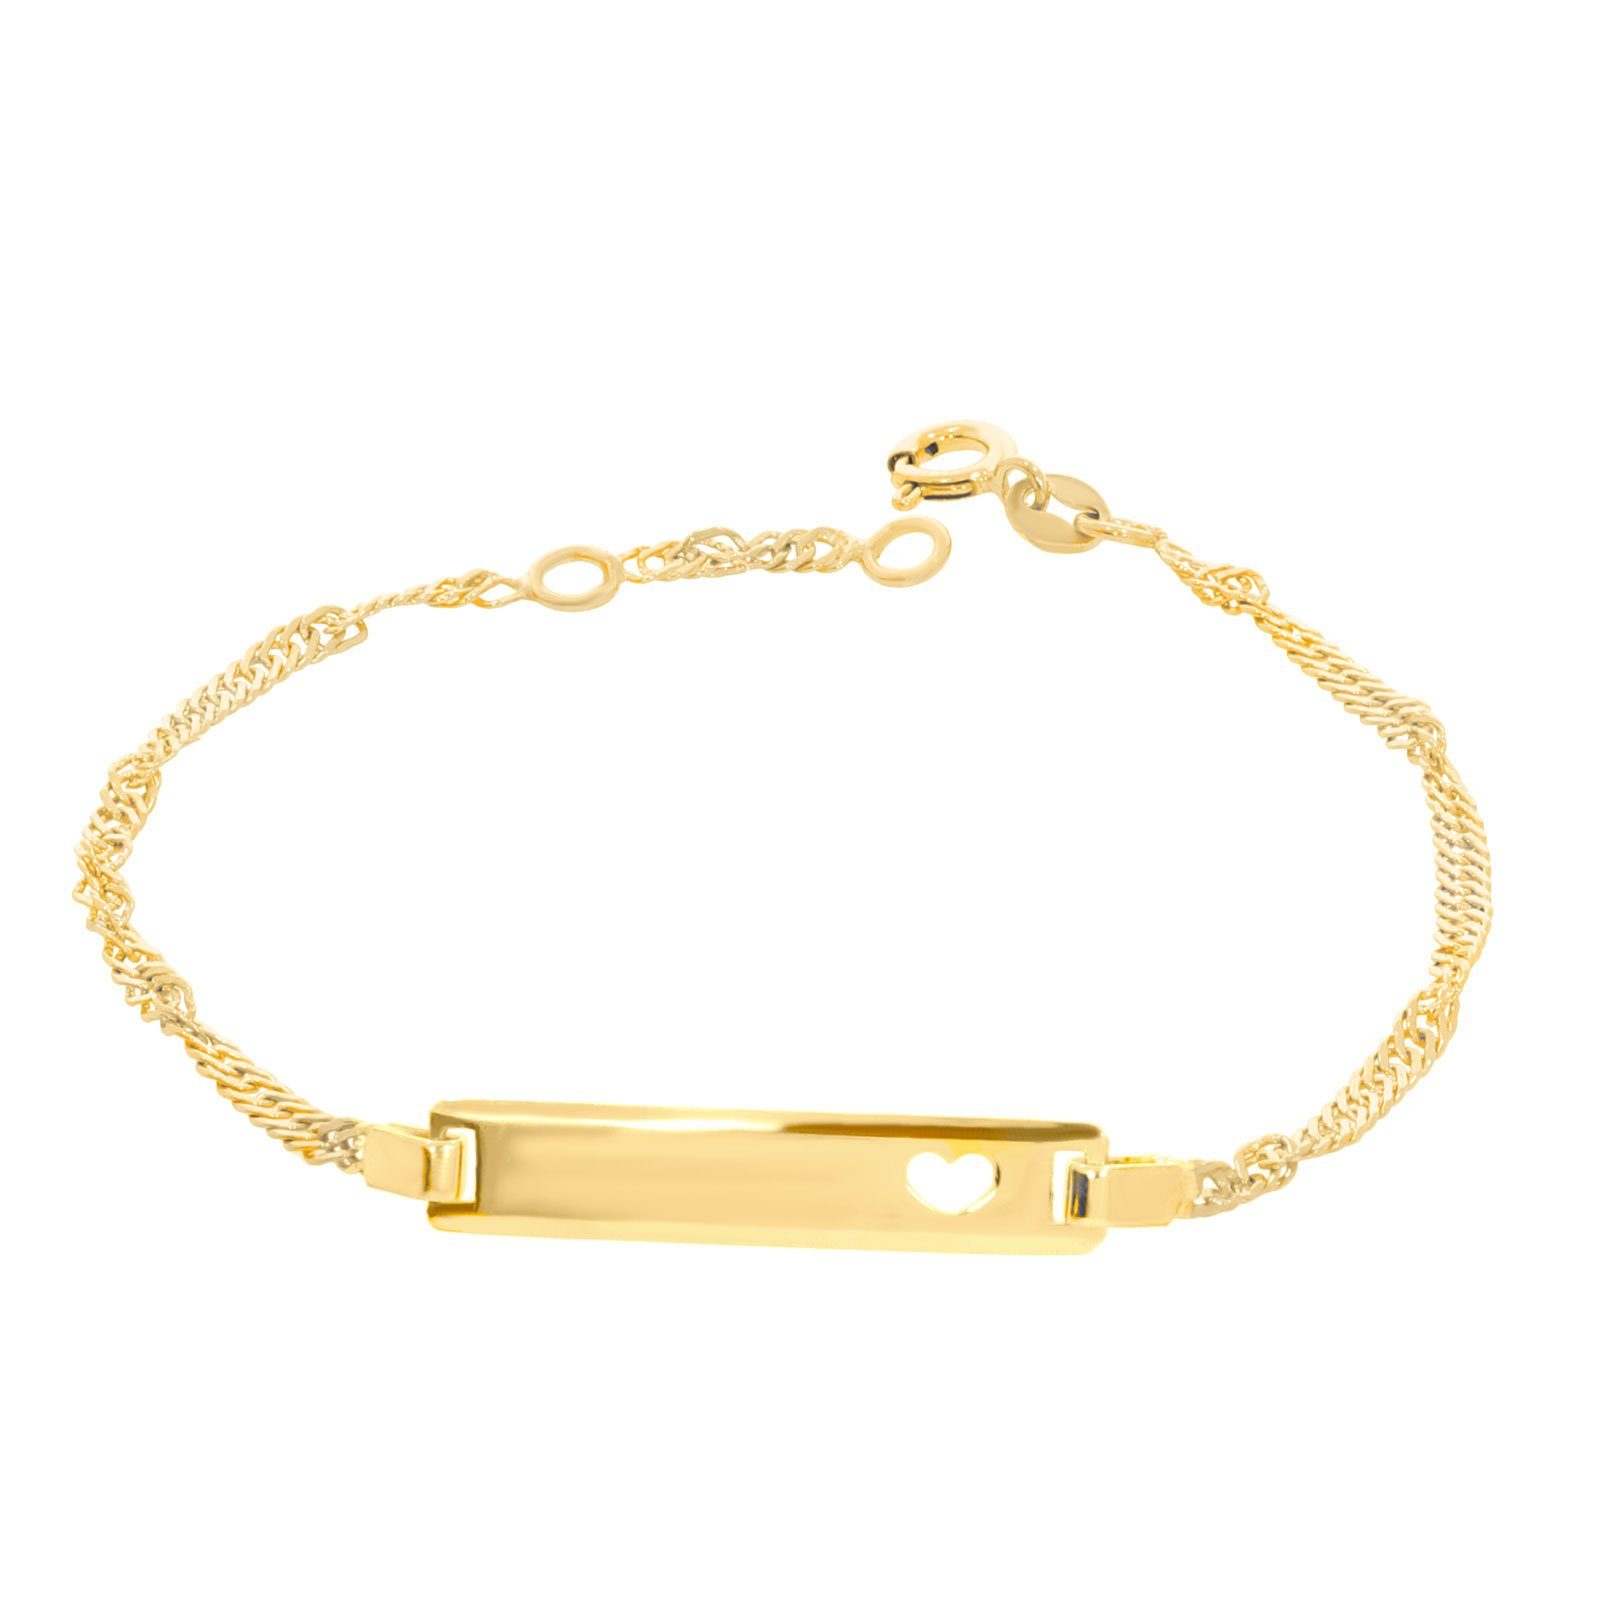 Damen Schmuck Stella-Jewellery Goldarmband 585 Gelbgold ID Armband mit Herz Singapurkette (inkl. Etui), Pferd, Armkette, Goldarm